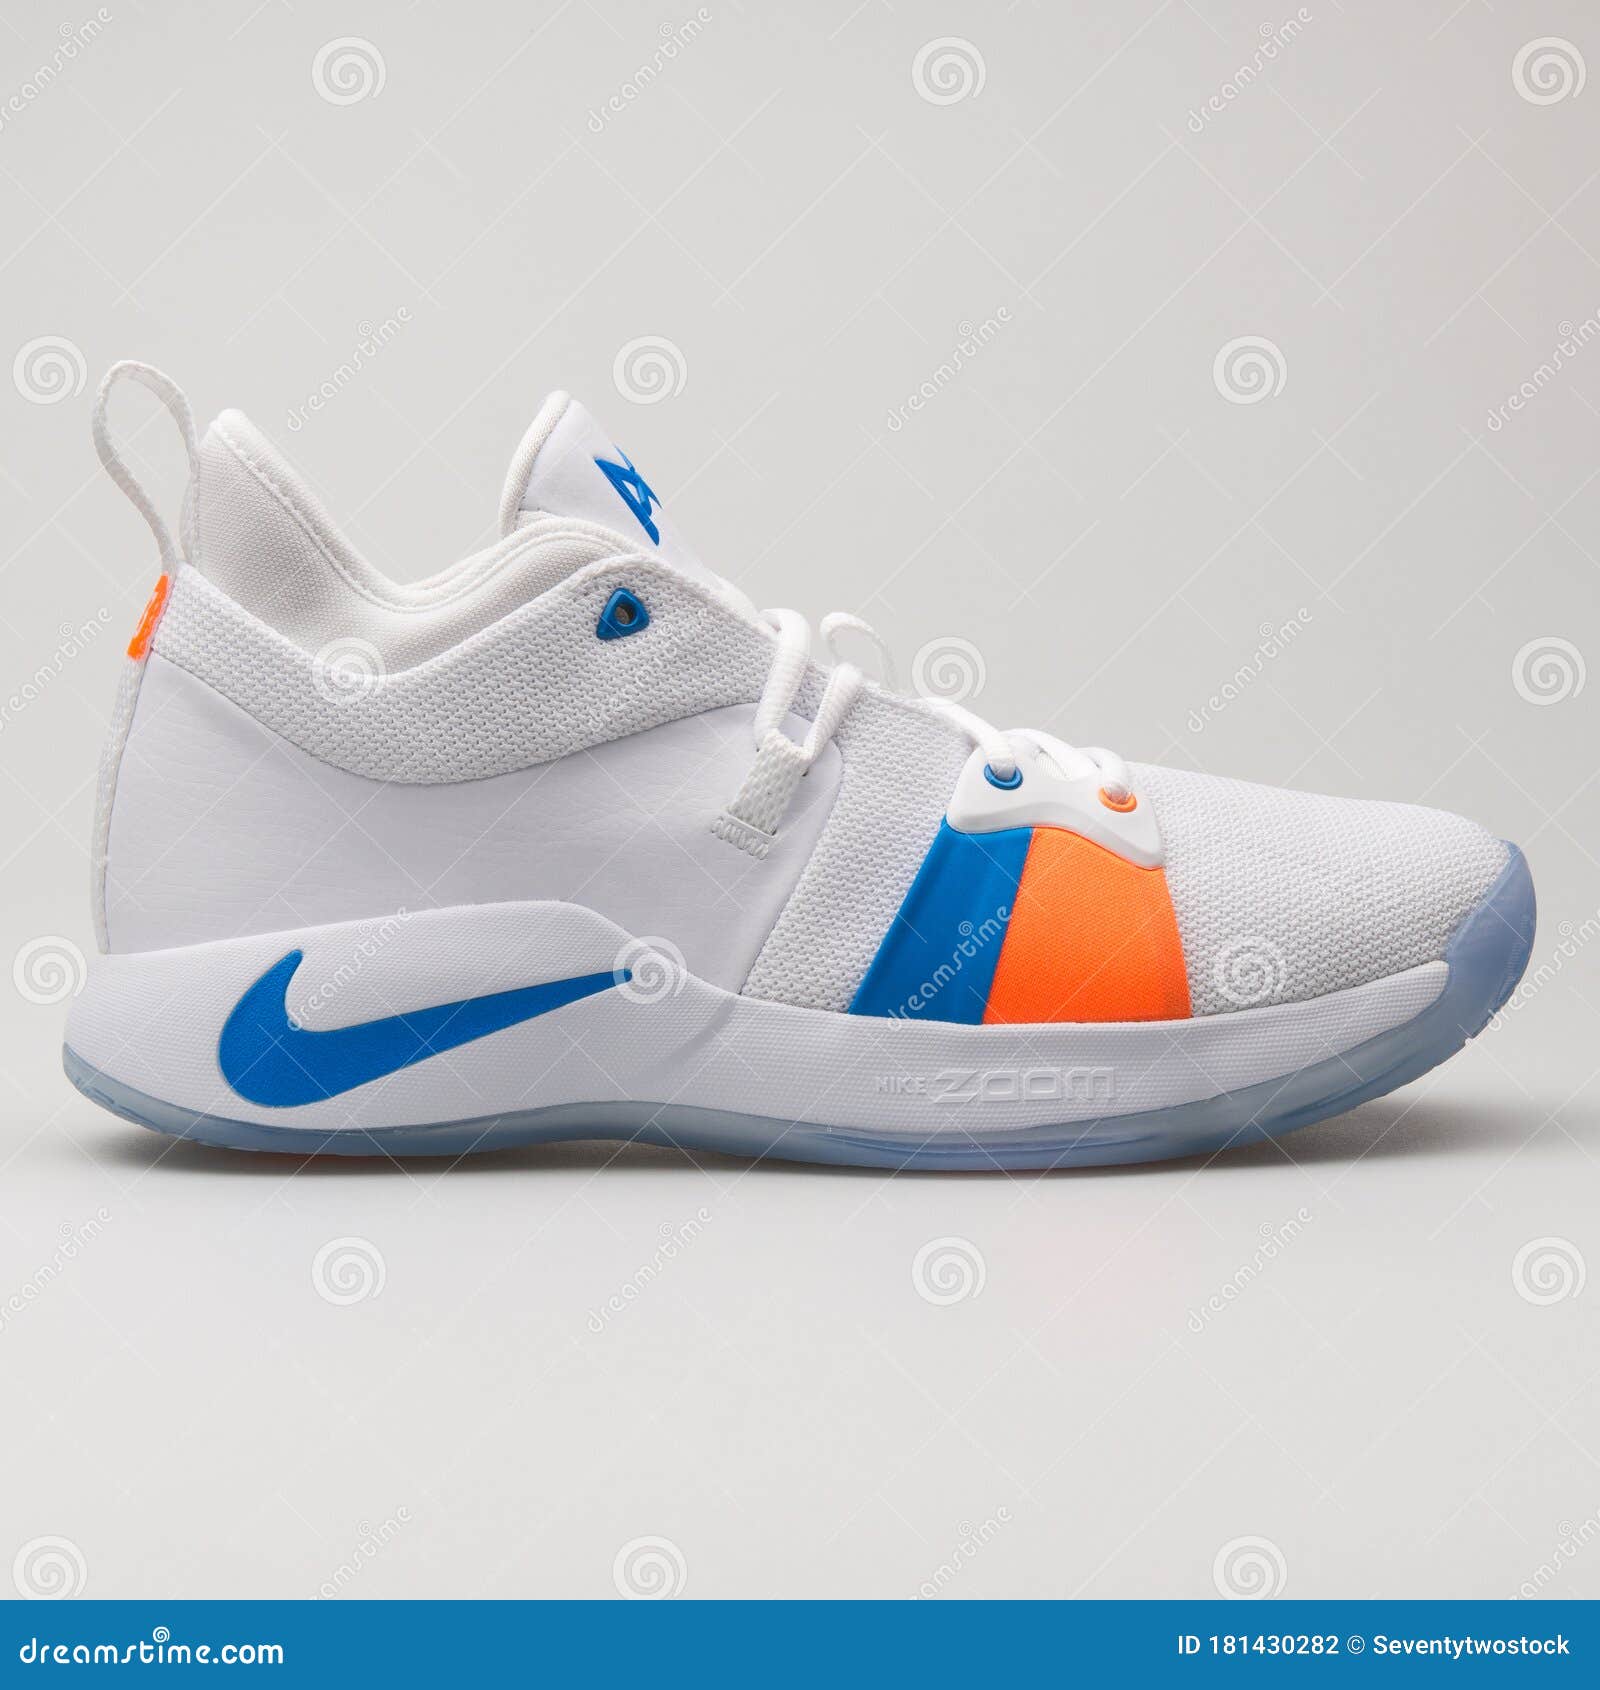 Nike 2 Zapatillas Azules Y Anaranjadas Blancas editorial - Imagen de equipo, ocasional: 181430282